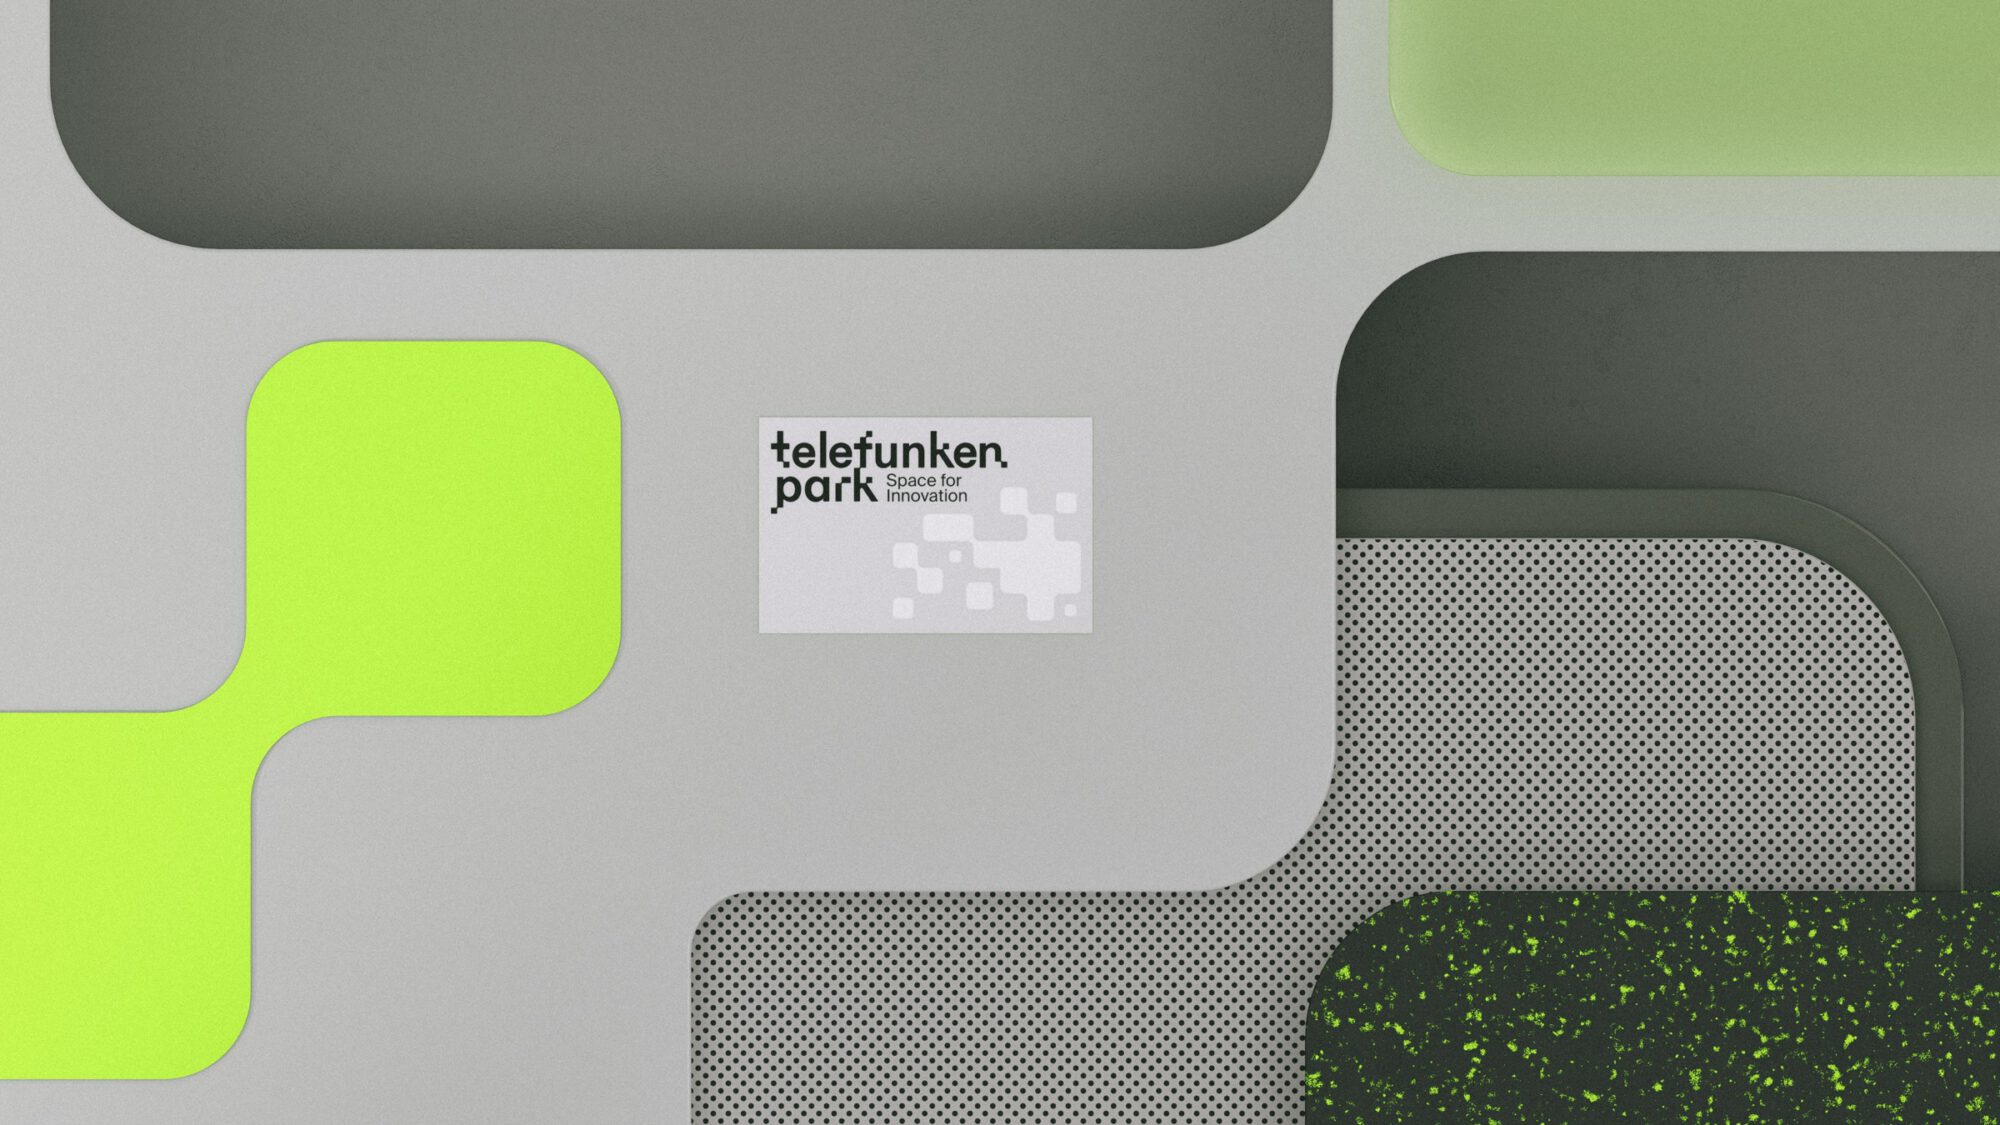 Abbildung einer Visitenkarte des Hochtechnologieparks telefunkenpark in Heilbronn am Neckar